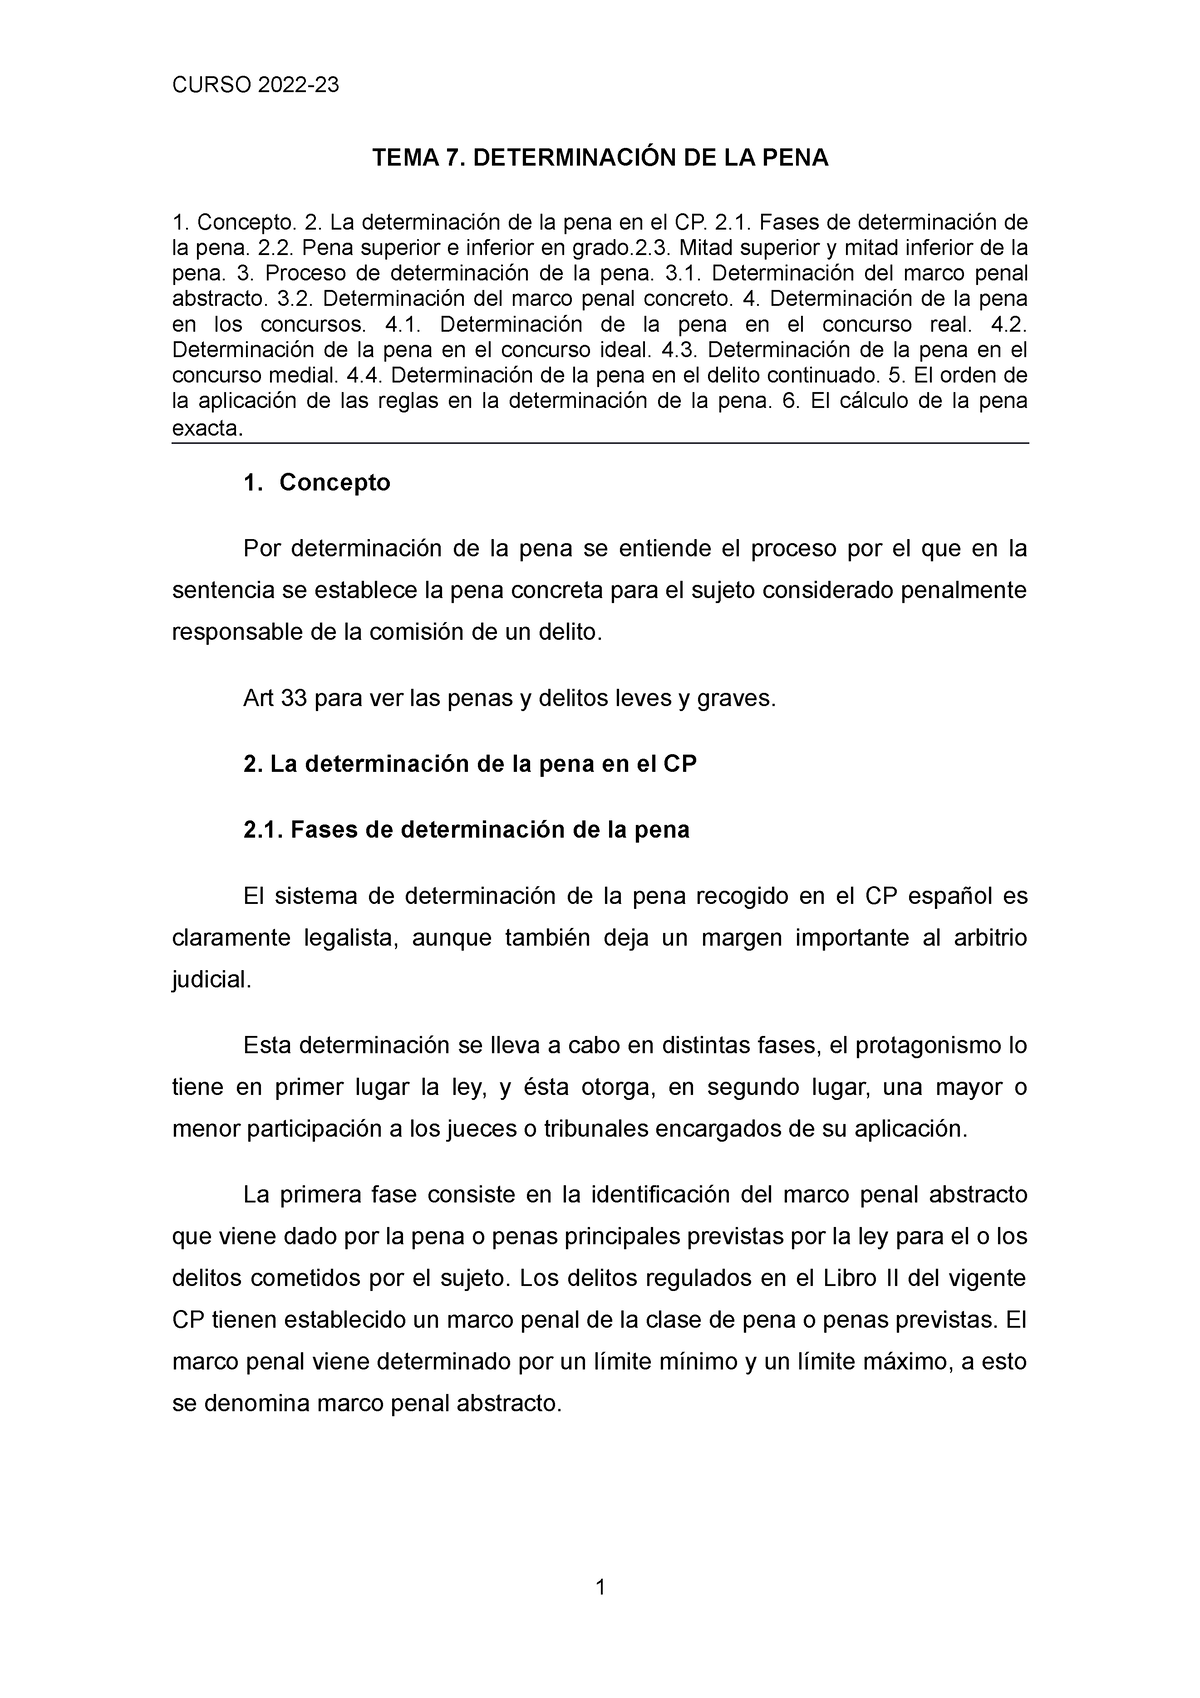 Tema 7 Determinación de la pena - TEMA 7. DETERMINACIÓN DE LA PENA ...